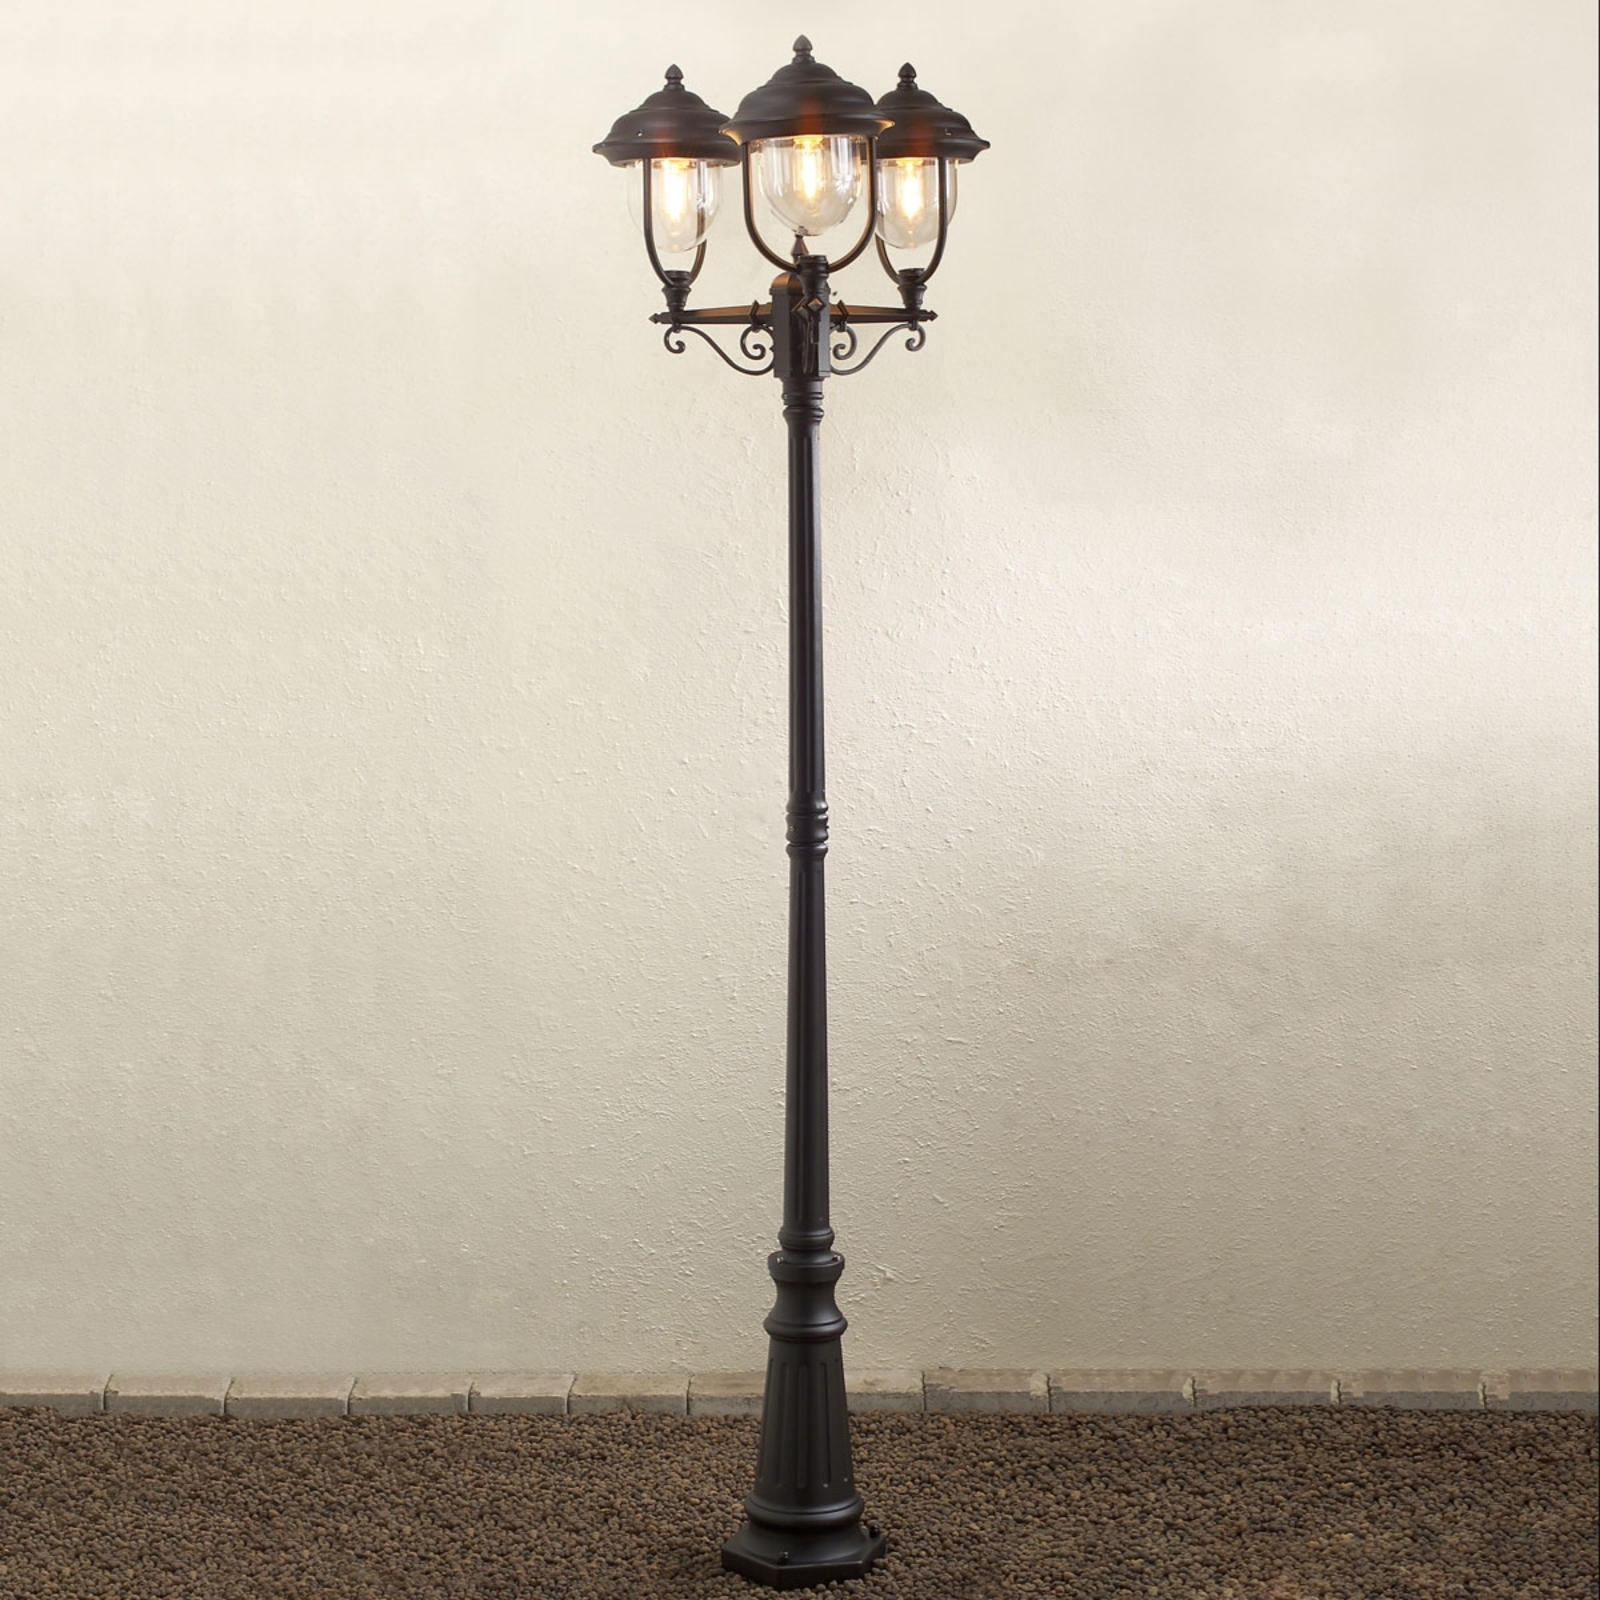 Parma lamp post 3-bulb in black